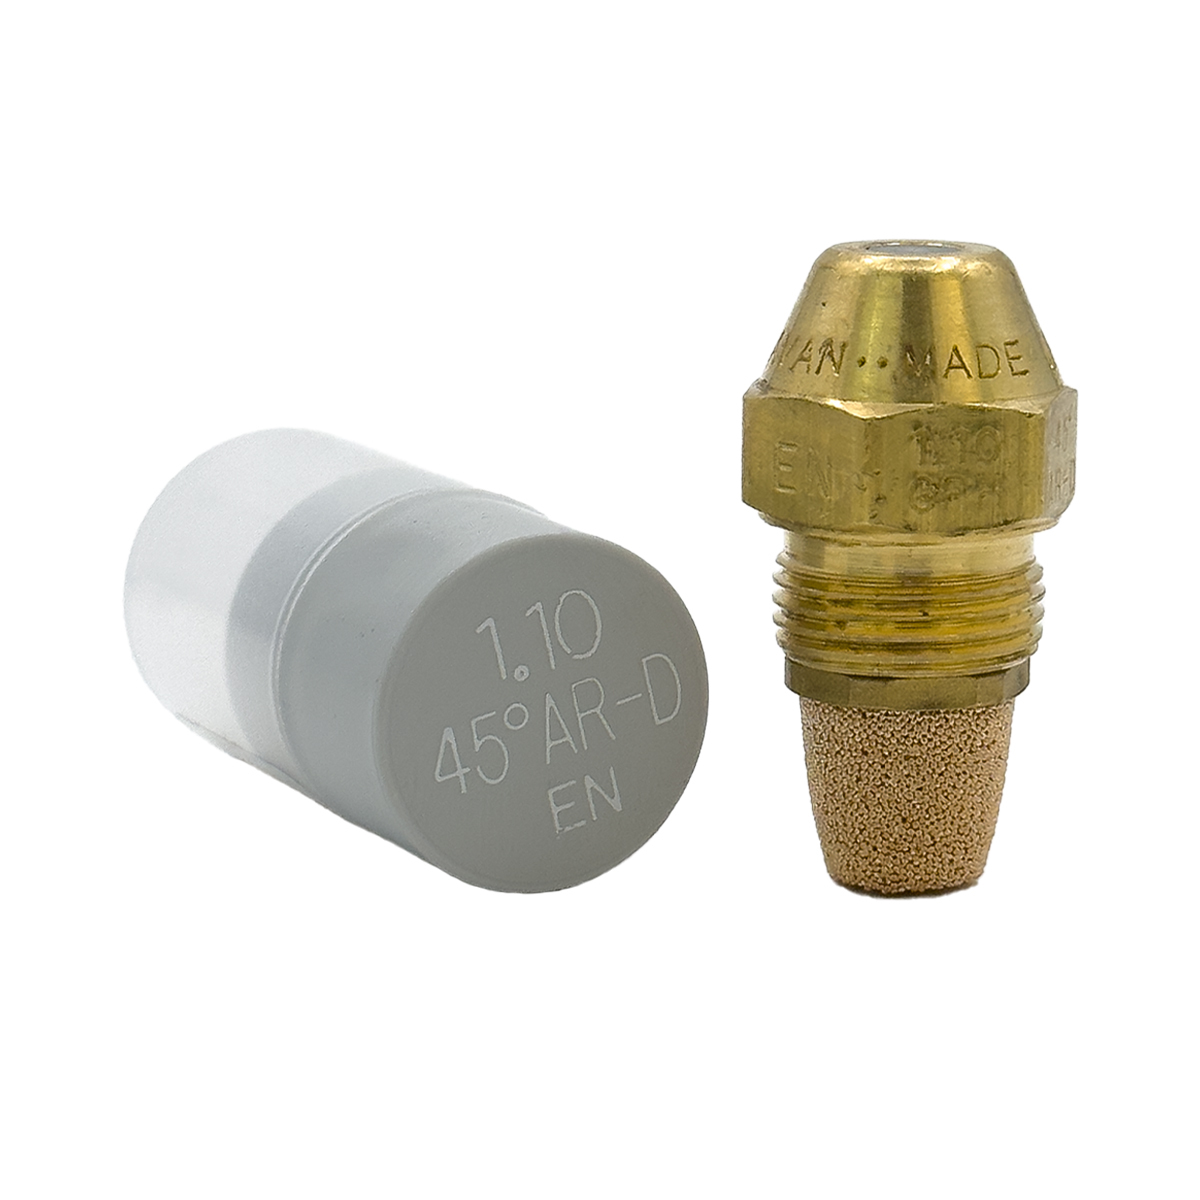 Delavan AR-D Brass Fuel Oil Nozzle (45°, Solid)